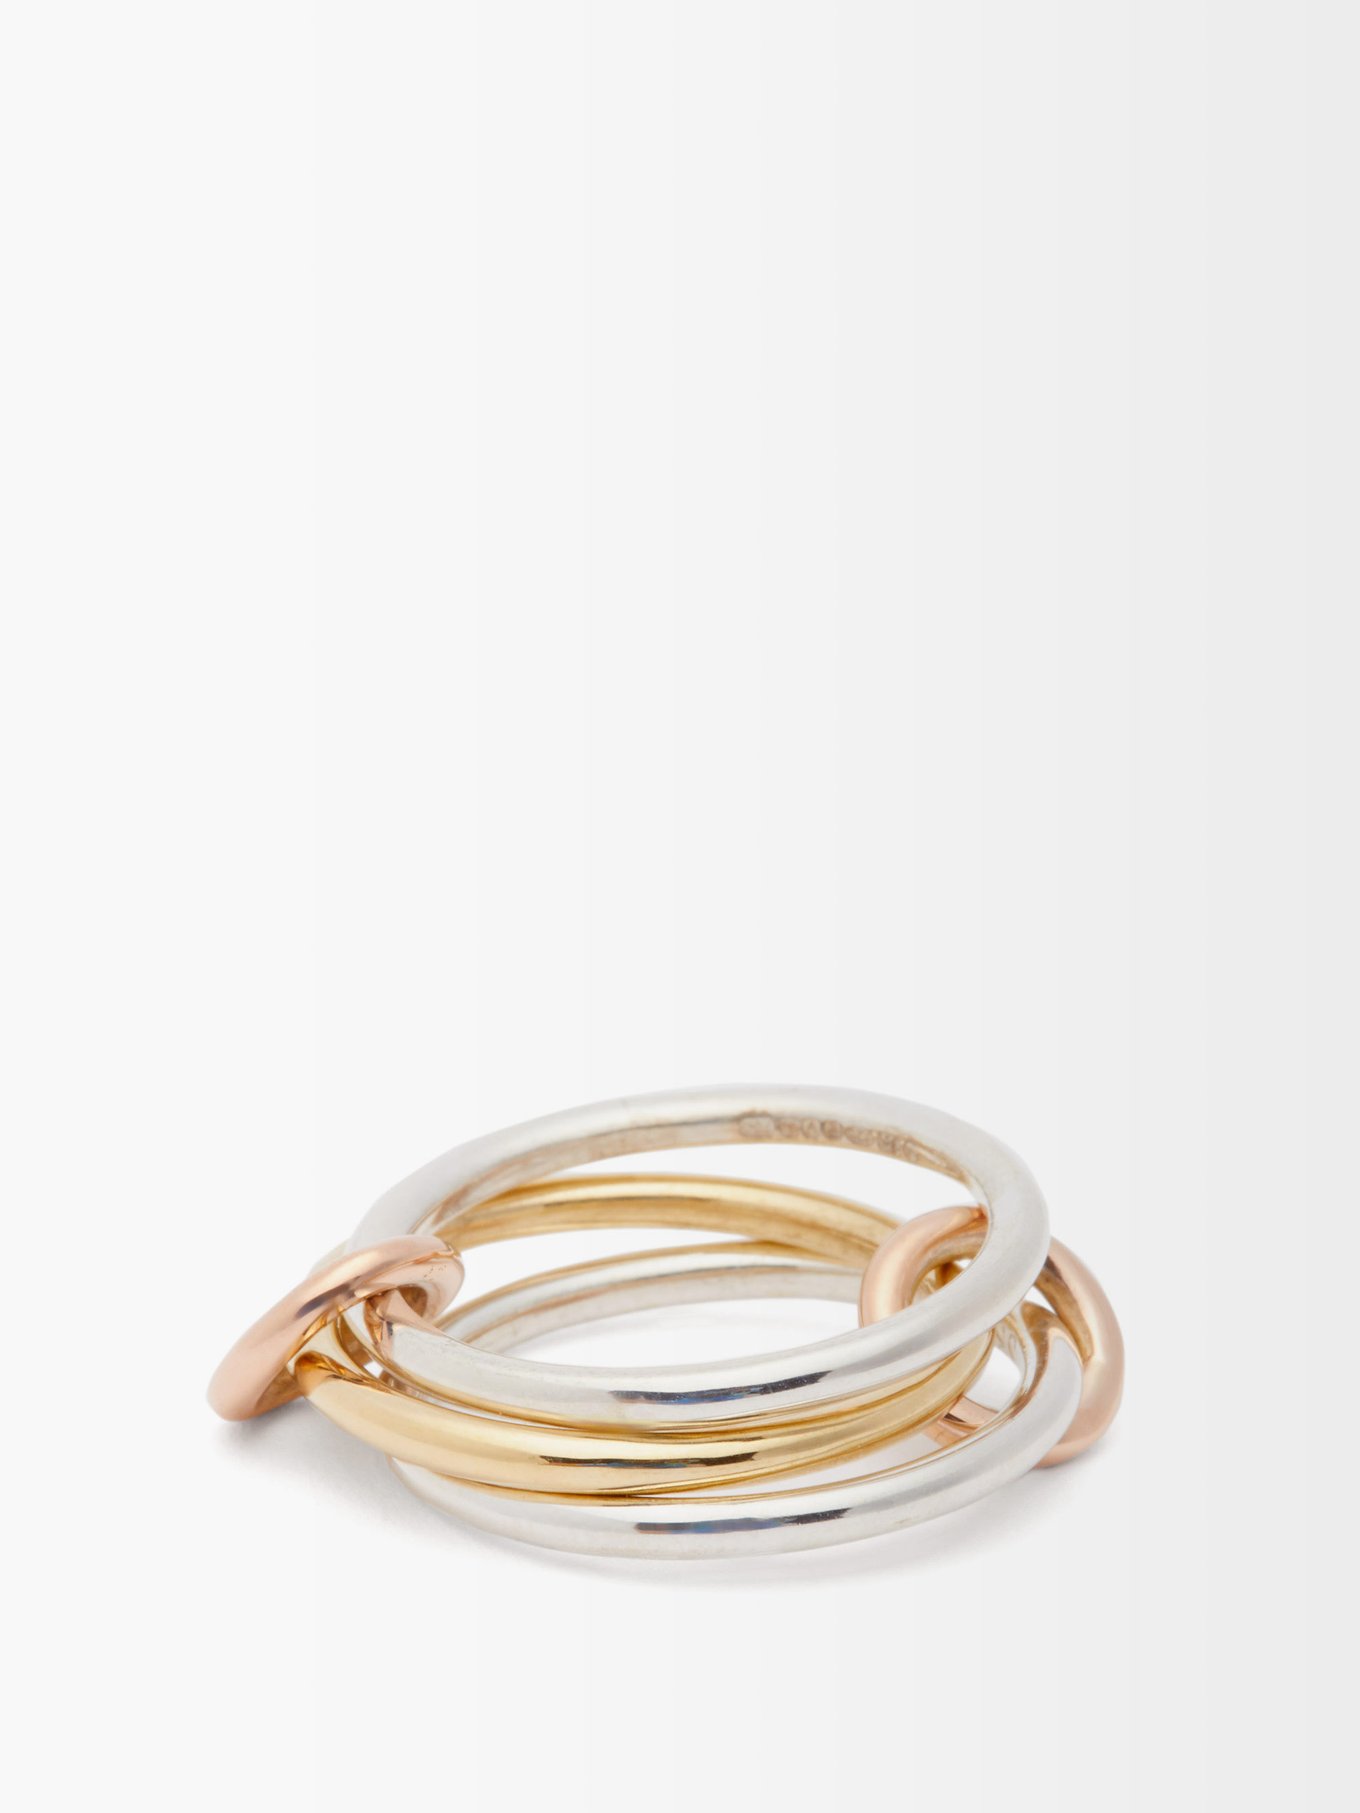 Solarium 18kt gold & silver ring | Spinelli Kilcollin